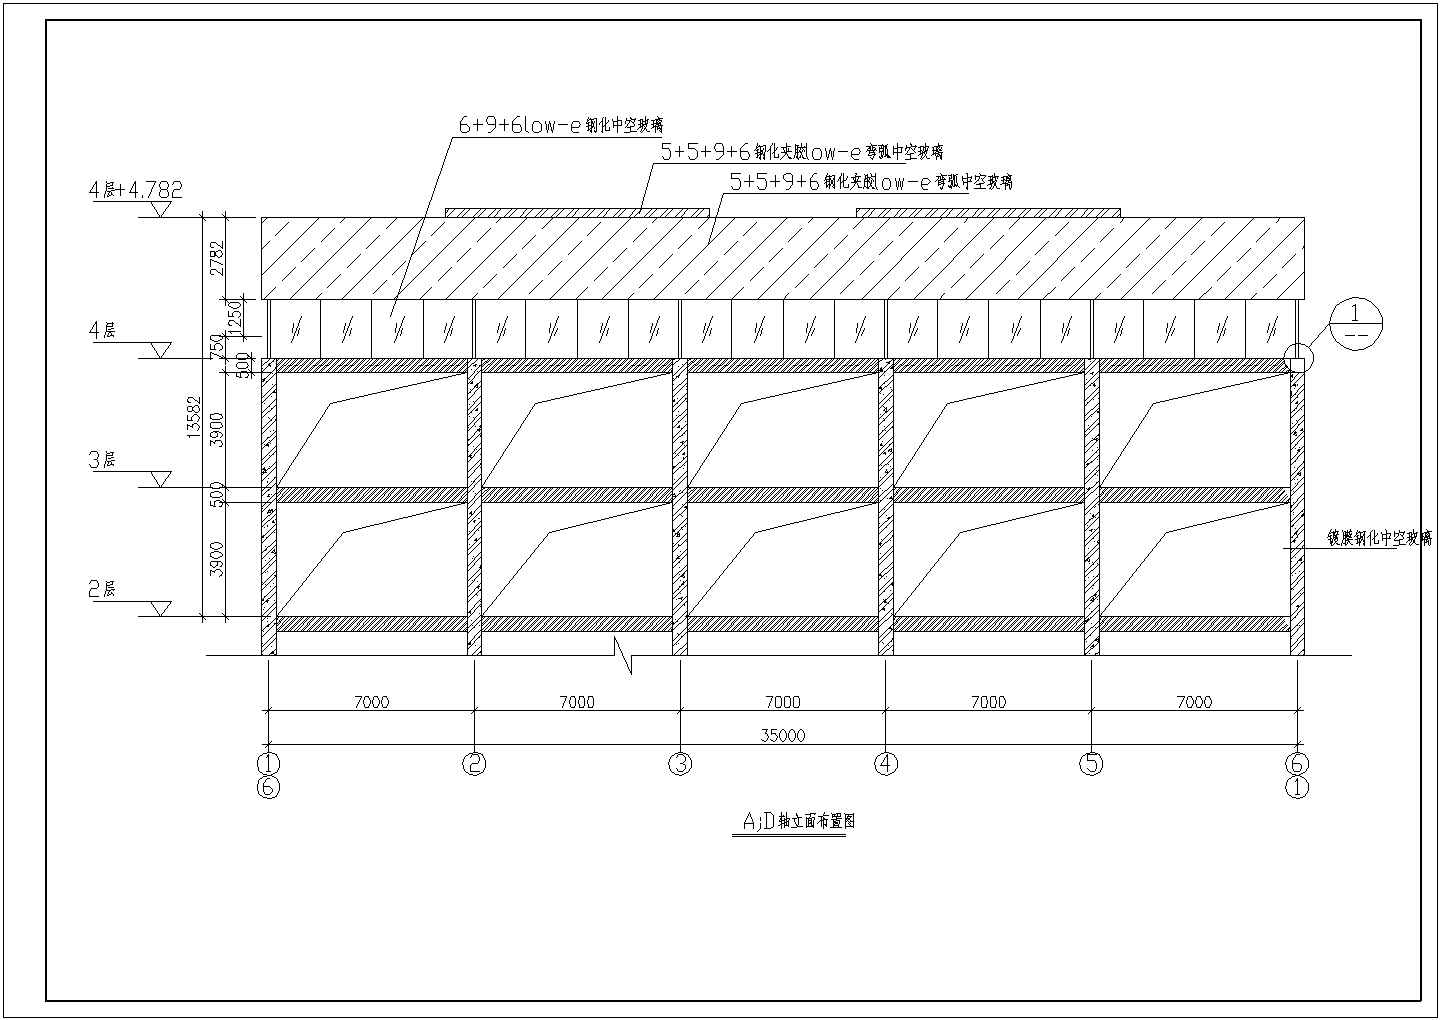 某地游泳池钢结构天棚结构设计施工图